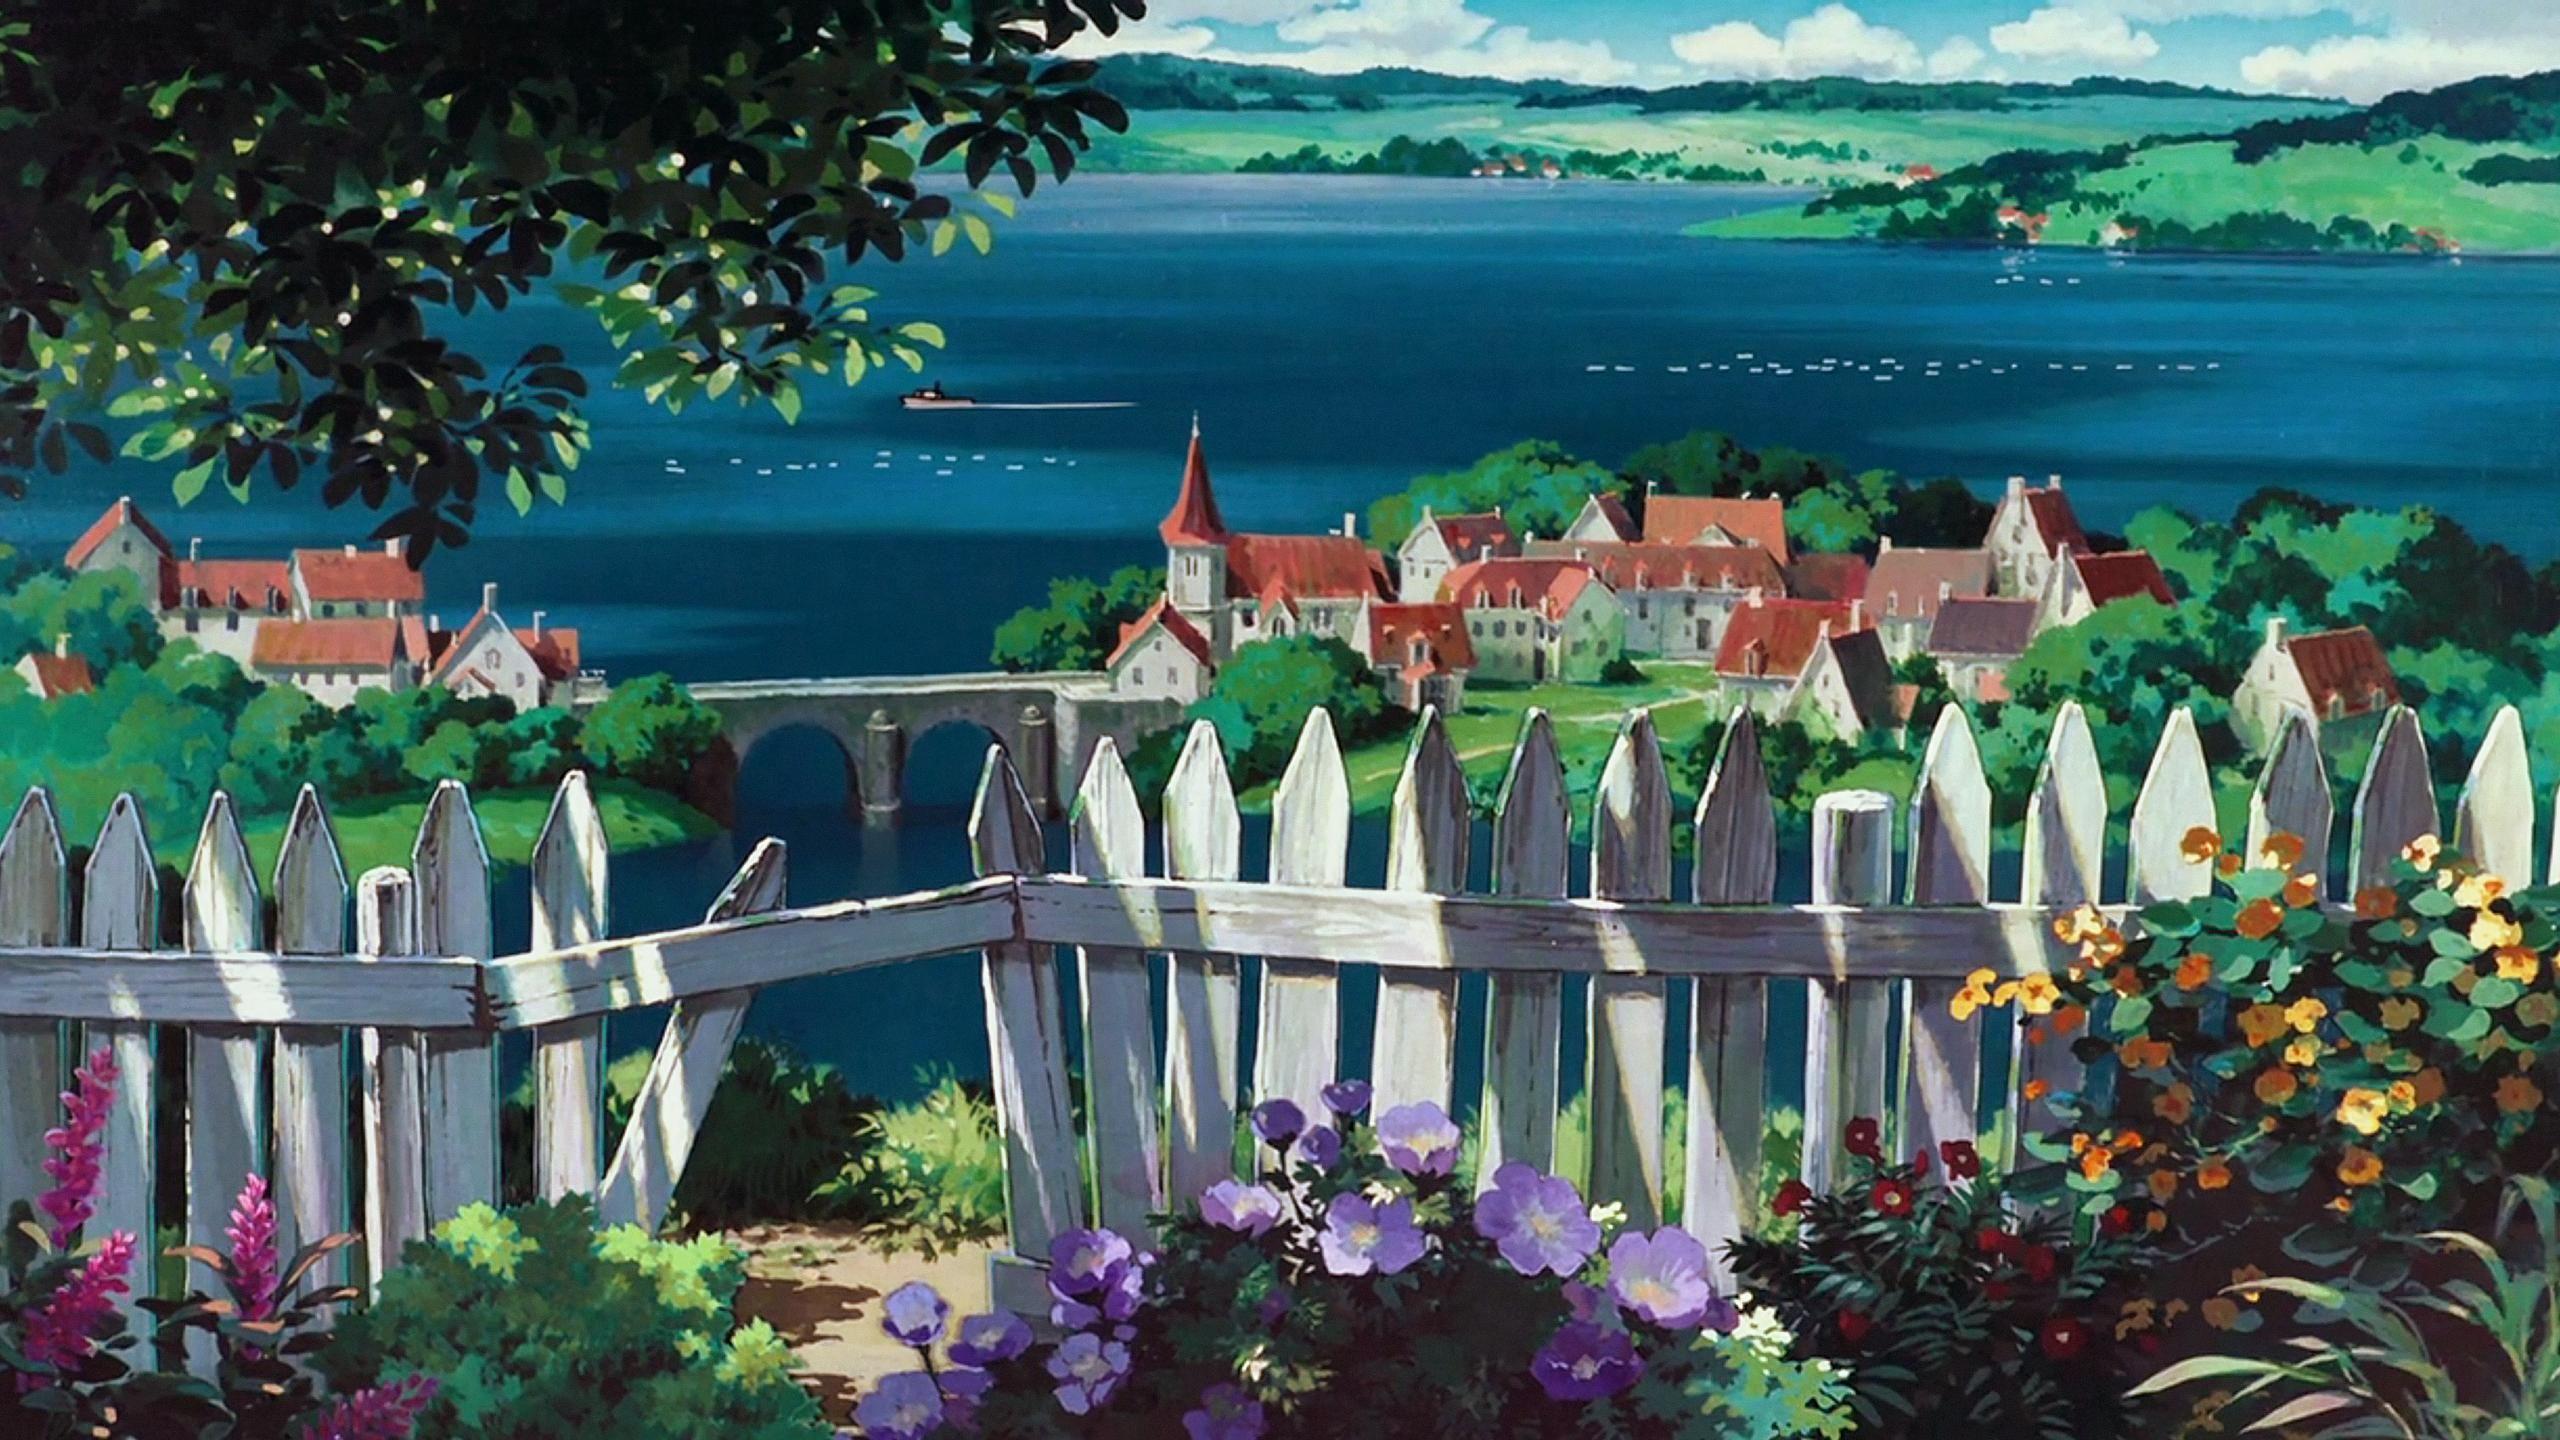 Studio Ghibli wallpaper. Studio ghibli background, Anime scenery, Ghibli artwork